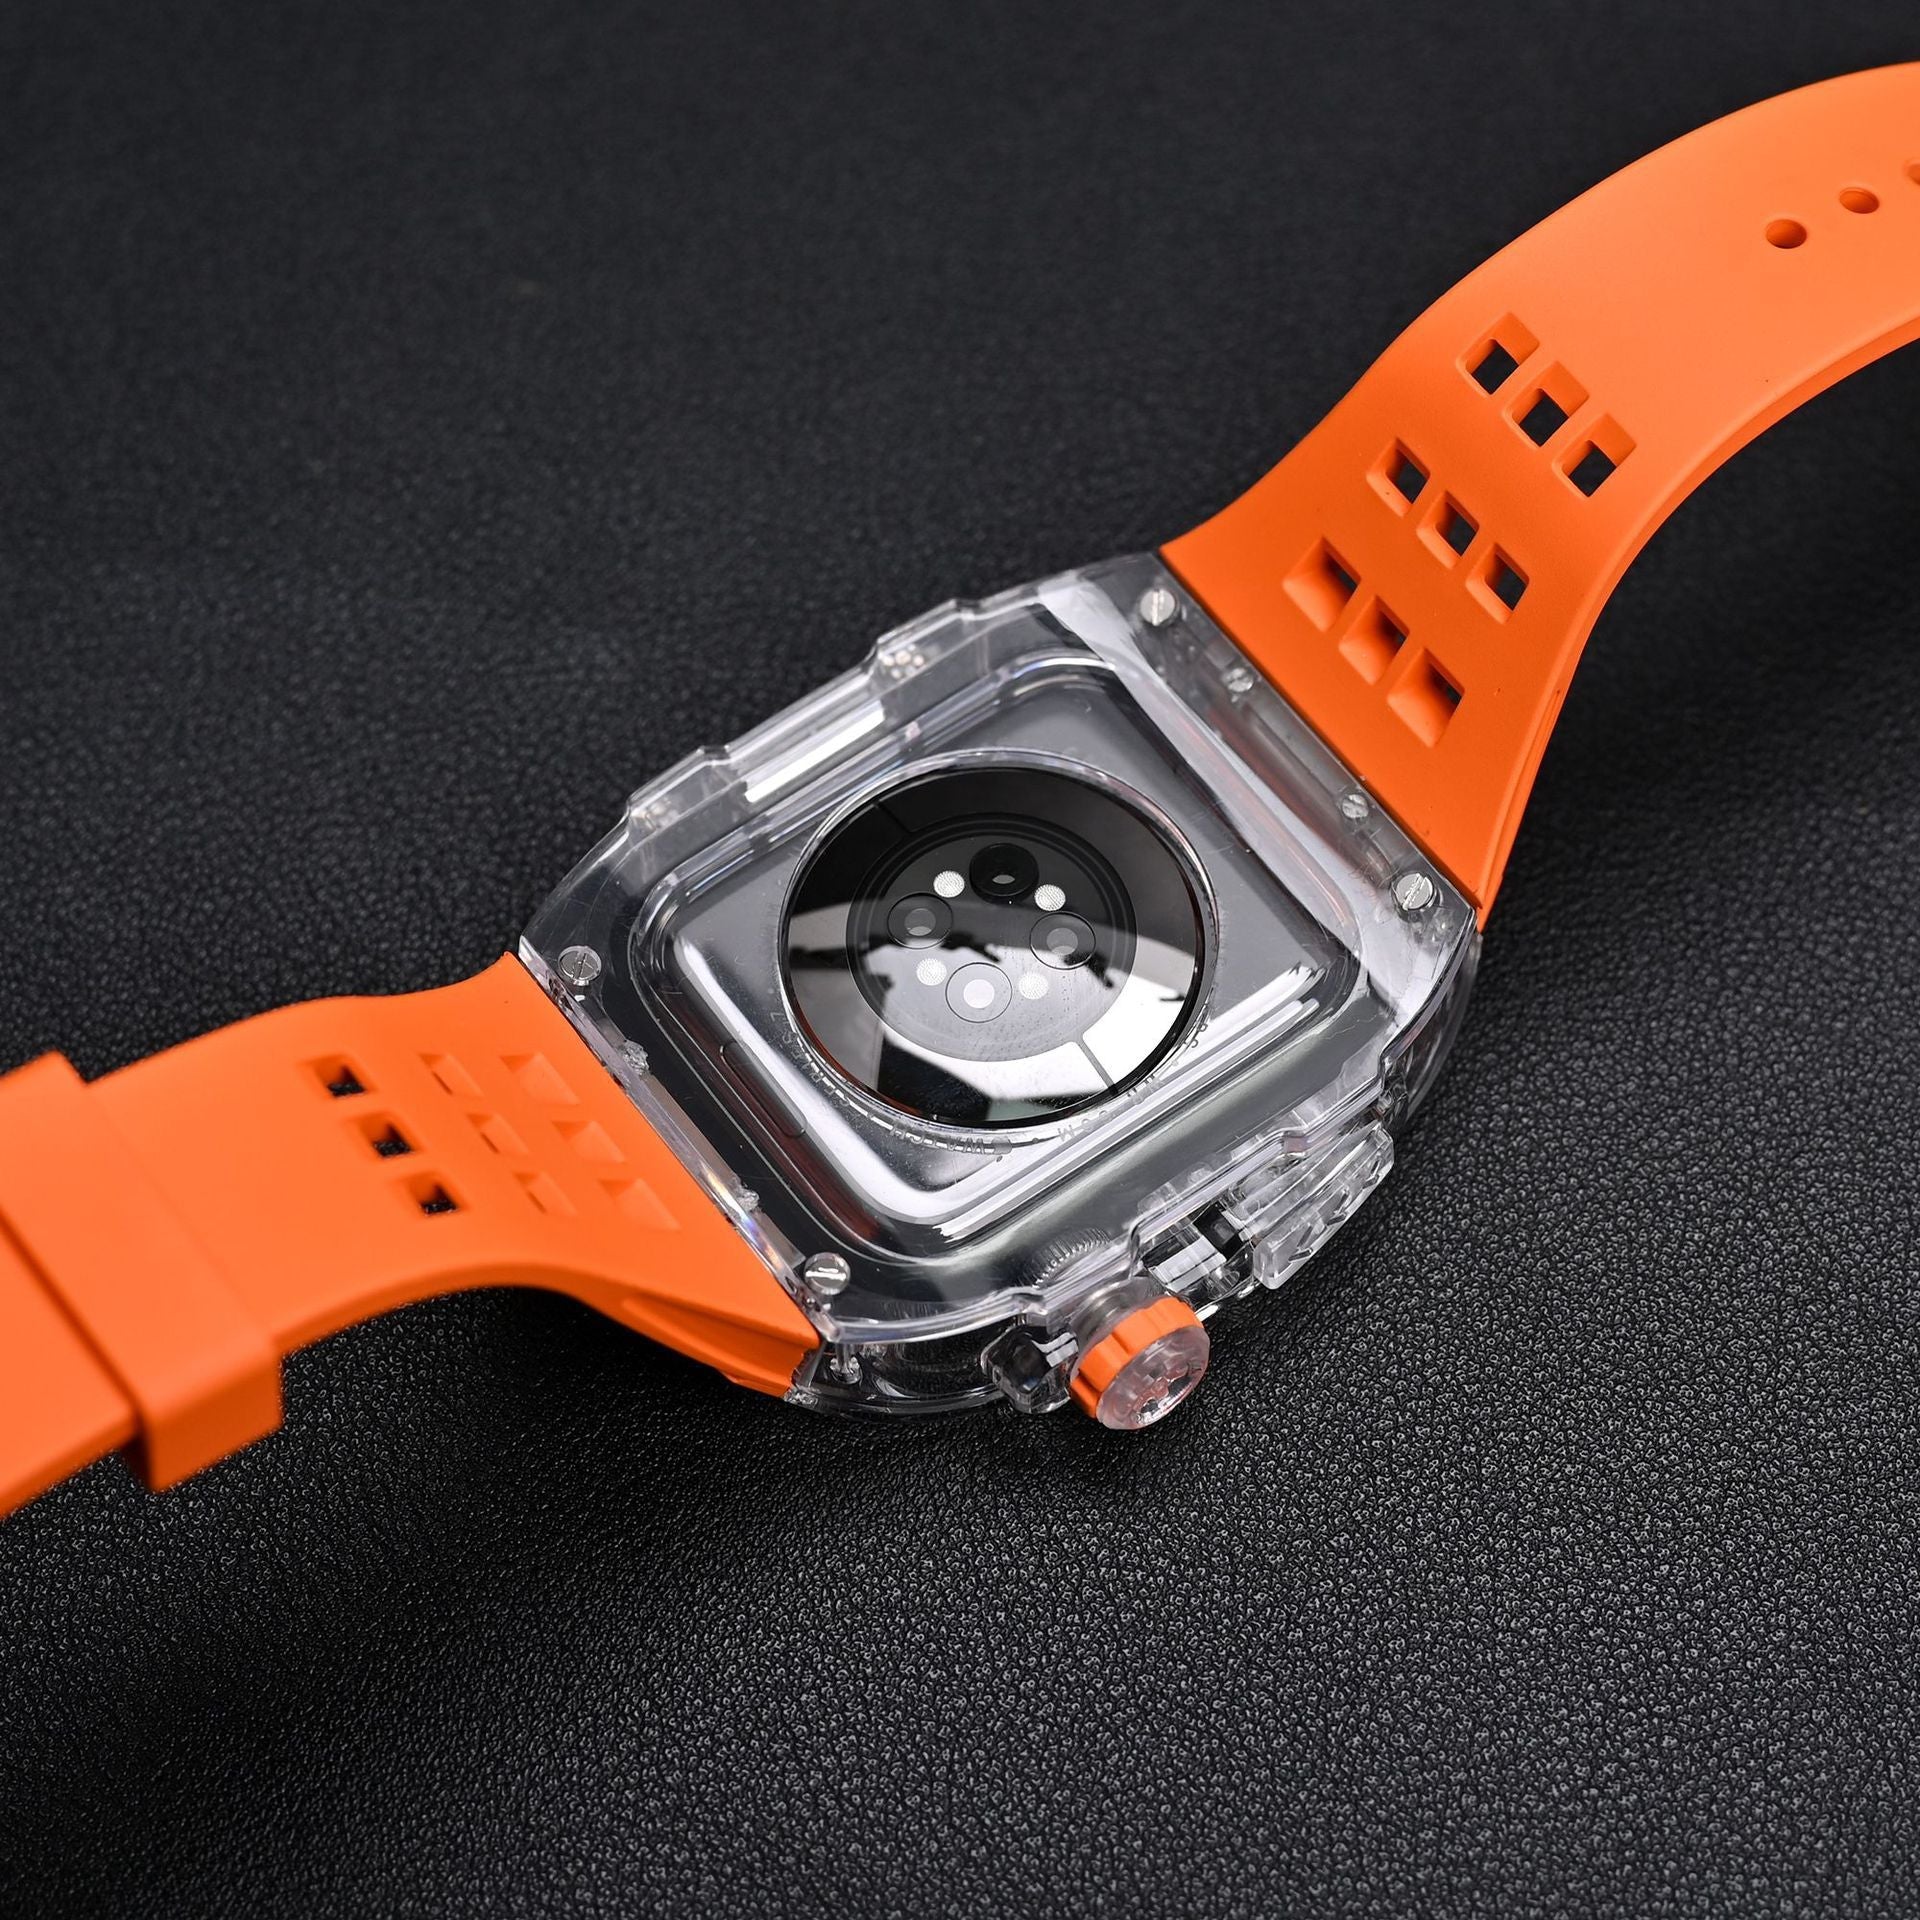 RM V30 Glacier Series Fluoroelastomer Band Transparent Case Retrofit Kit For Apple Watch